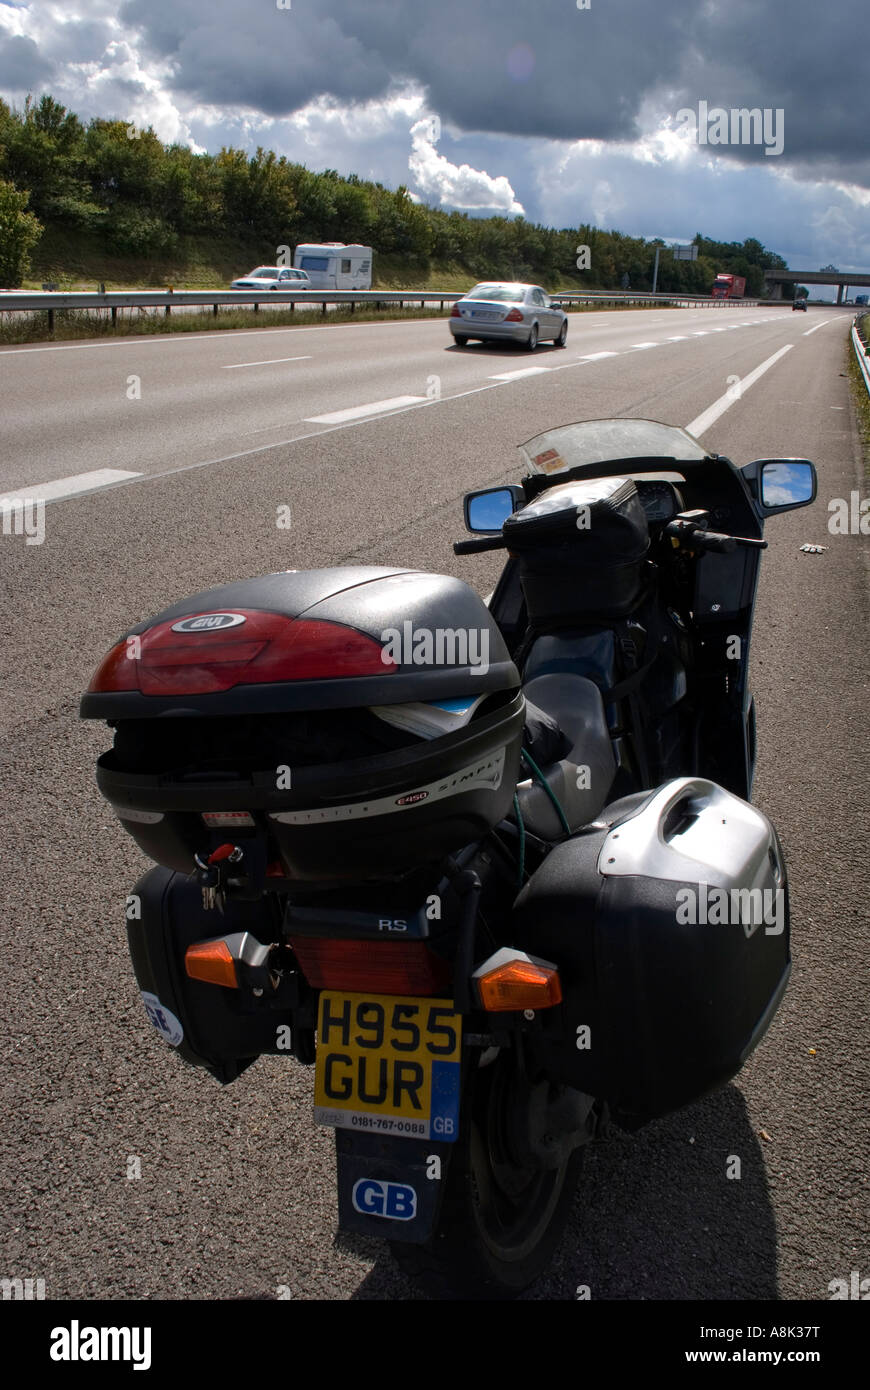 Europa Frankreich Rhone Motorrad geparkt auf autoroute Stockfoto